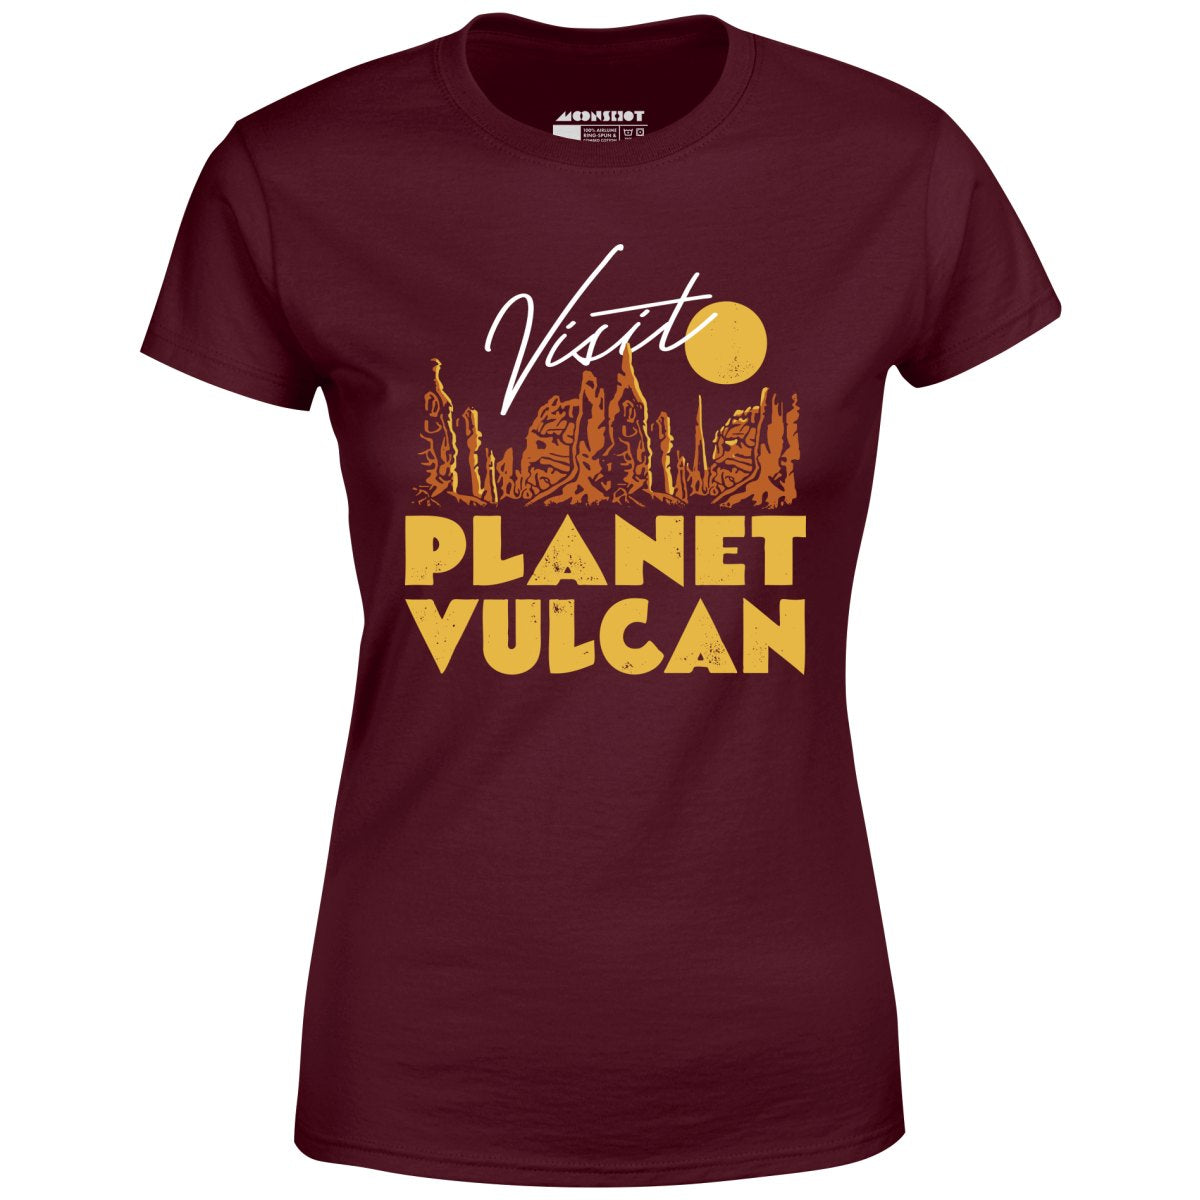 Visit Planet Vulcan - Women's T-Shirt